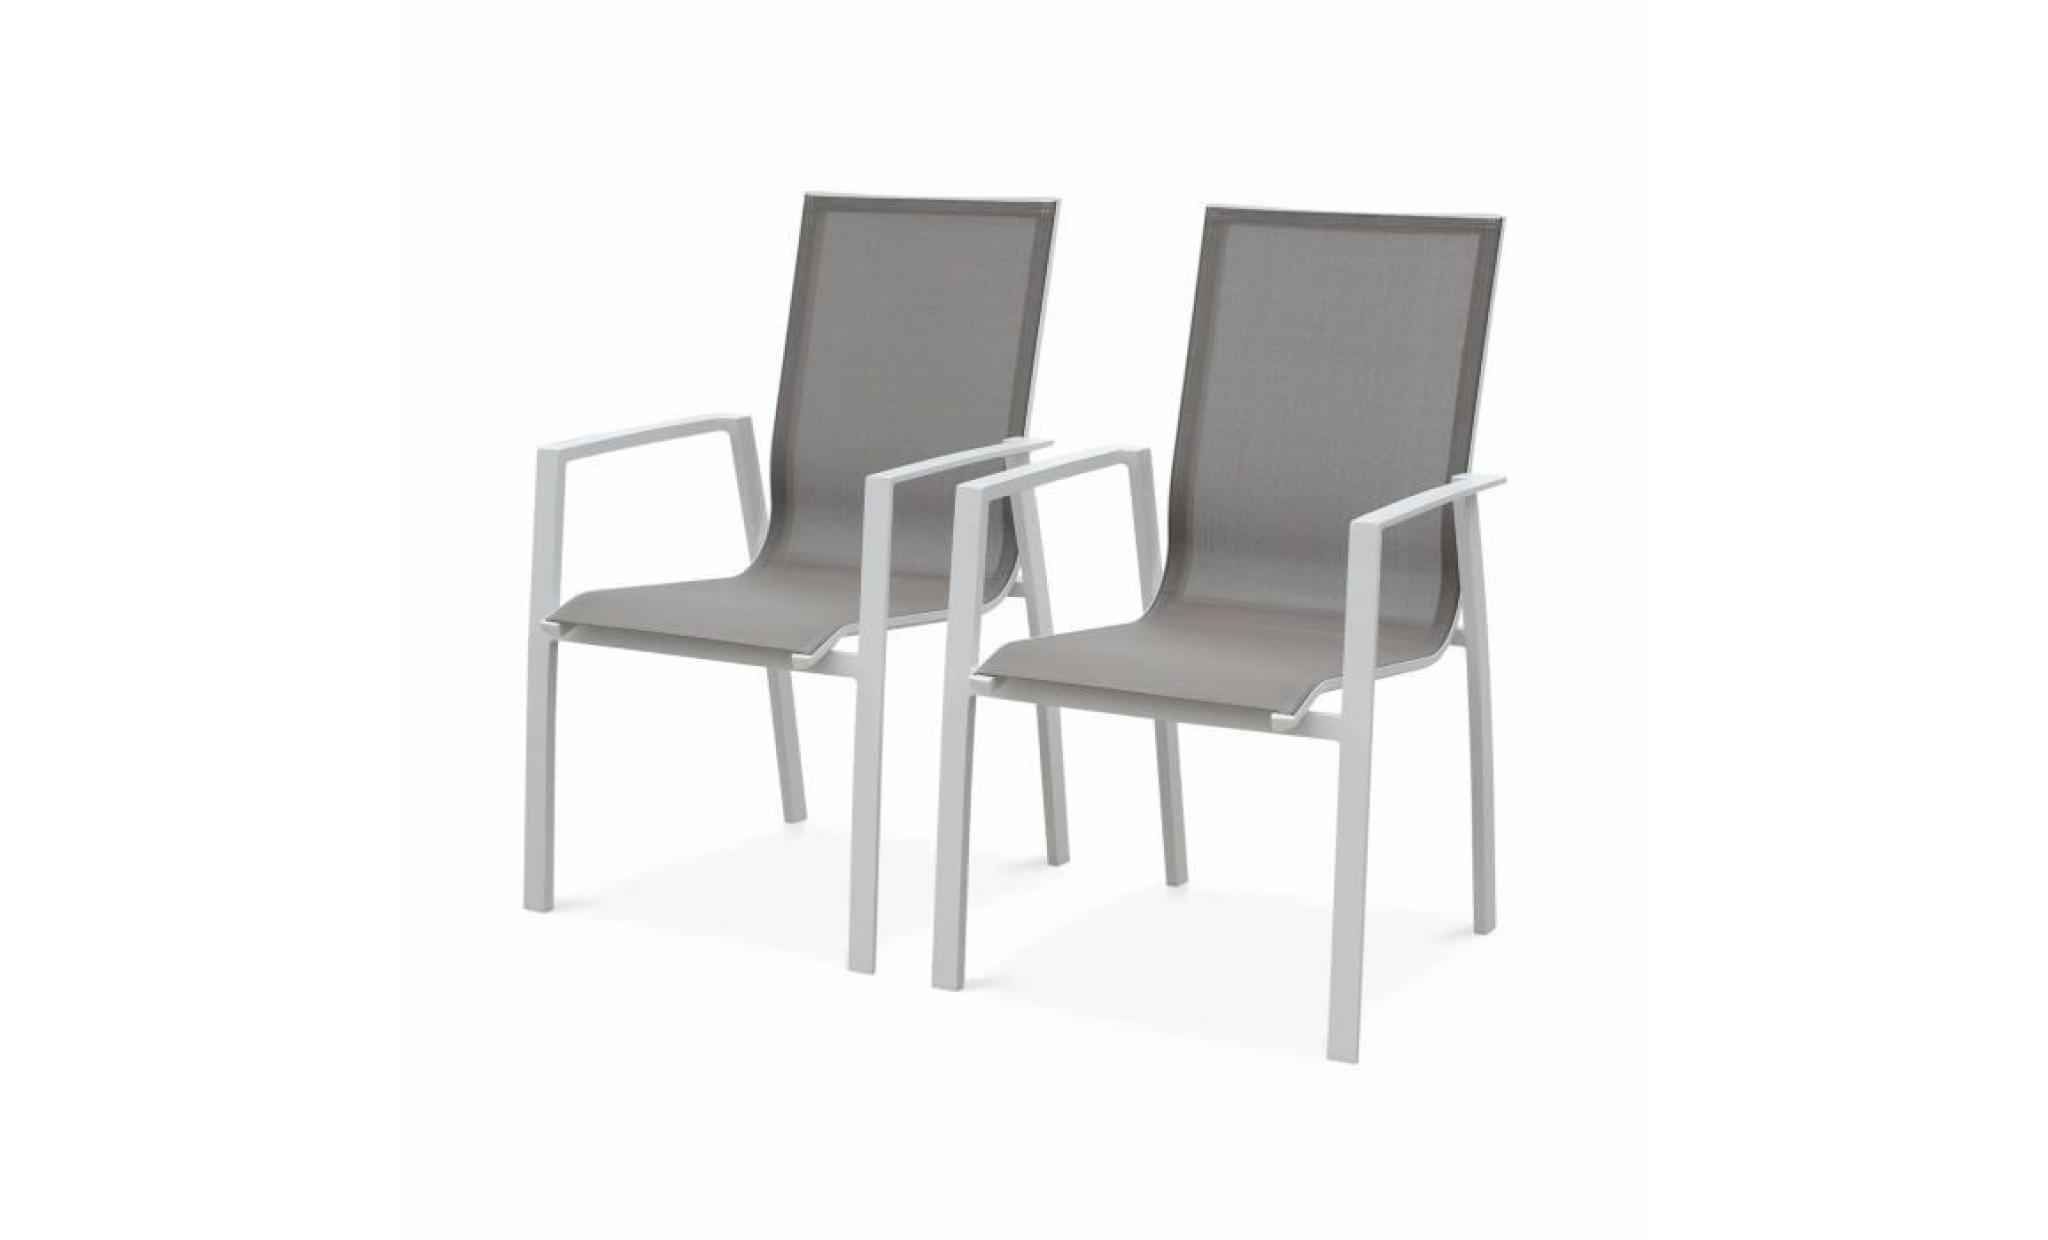 lot de 2 fauteuils   washington taupe   en aluminium blanc et textilène taupe, empilables